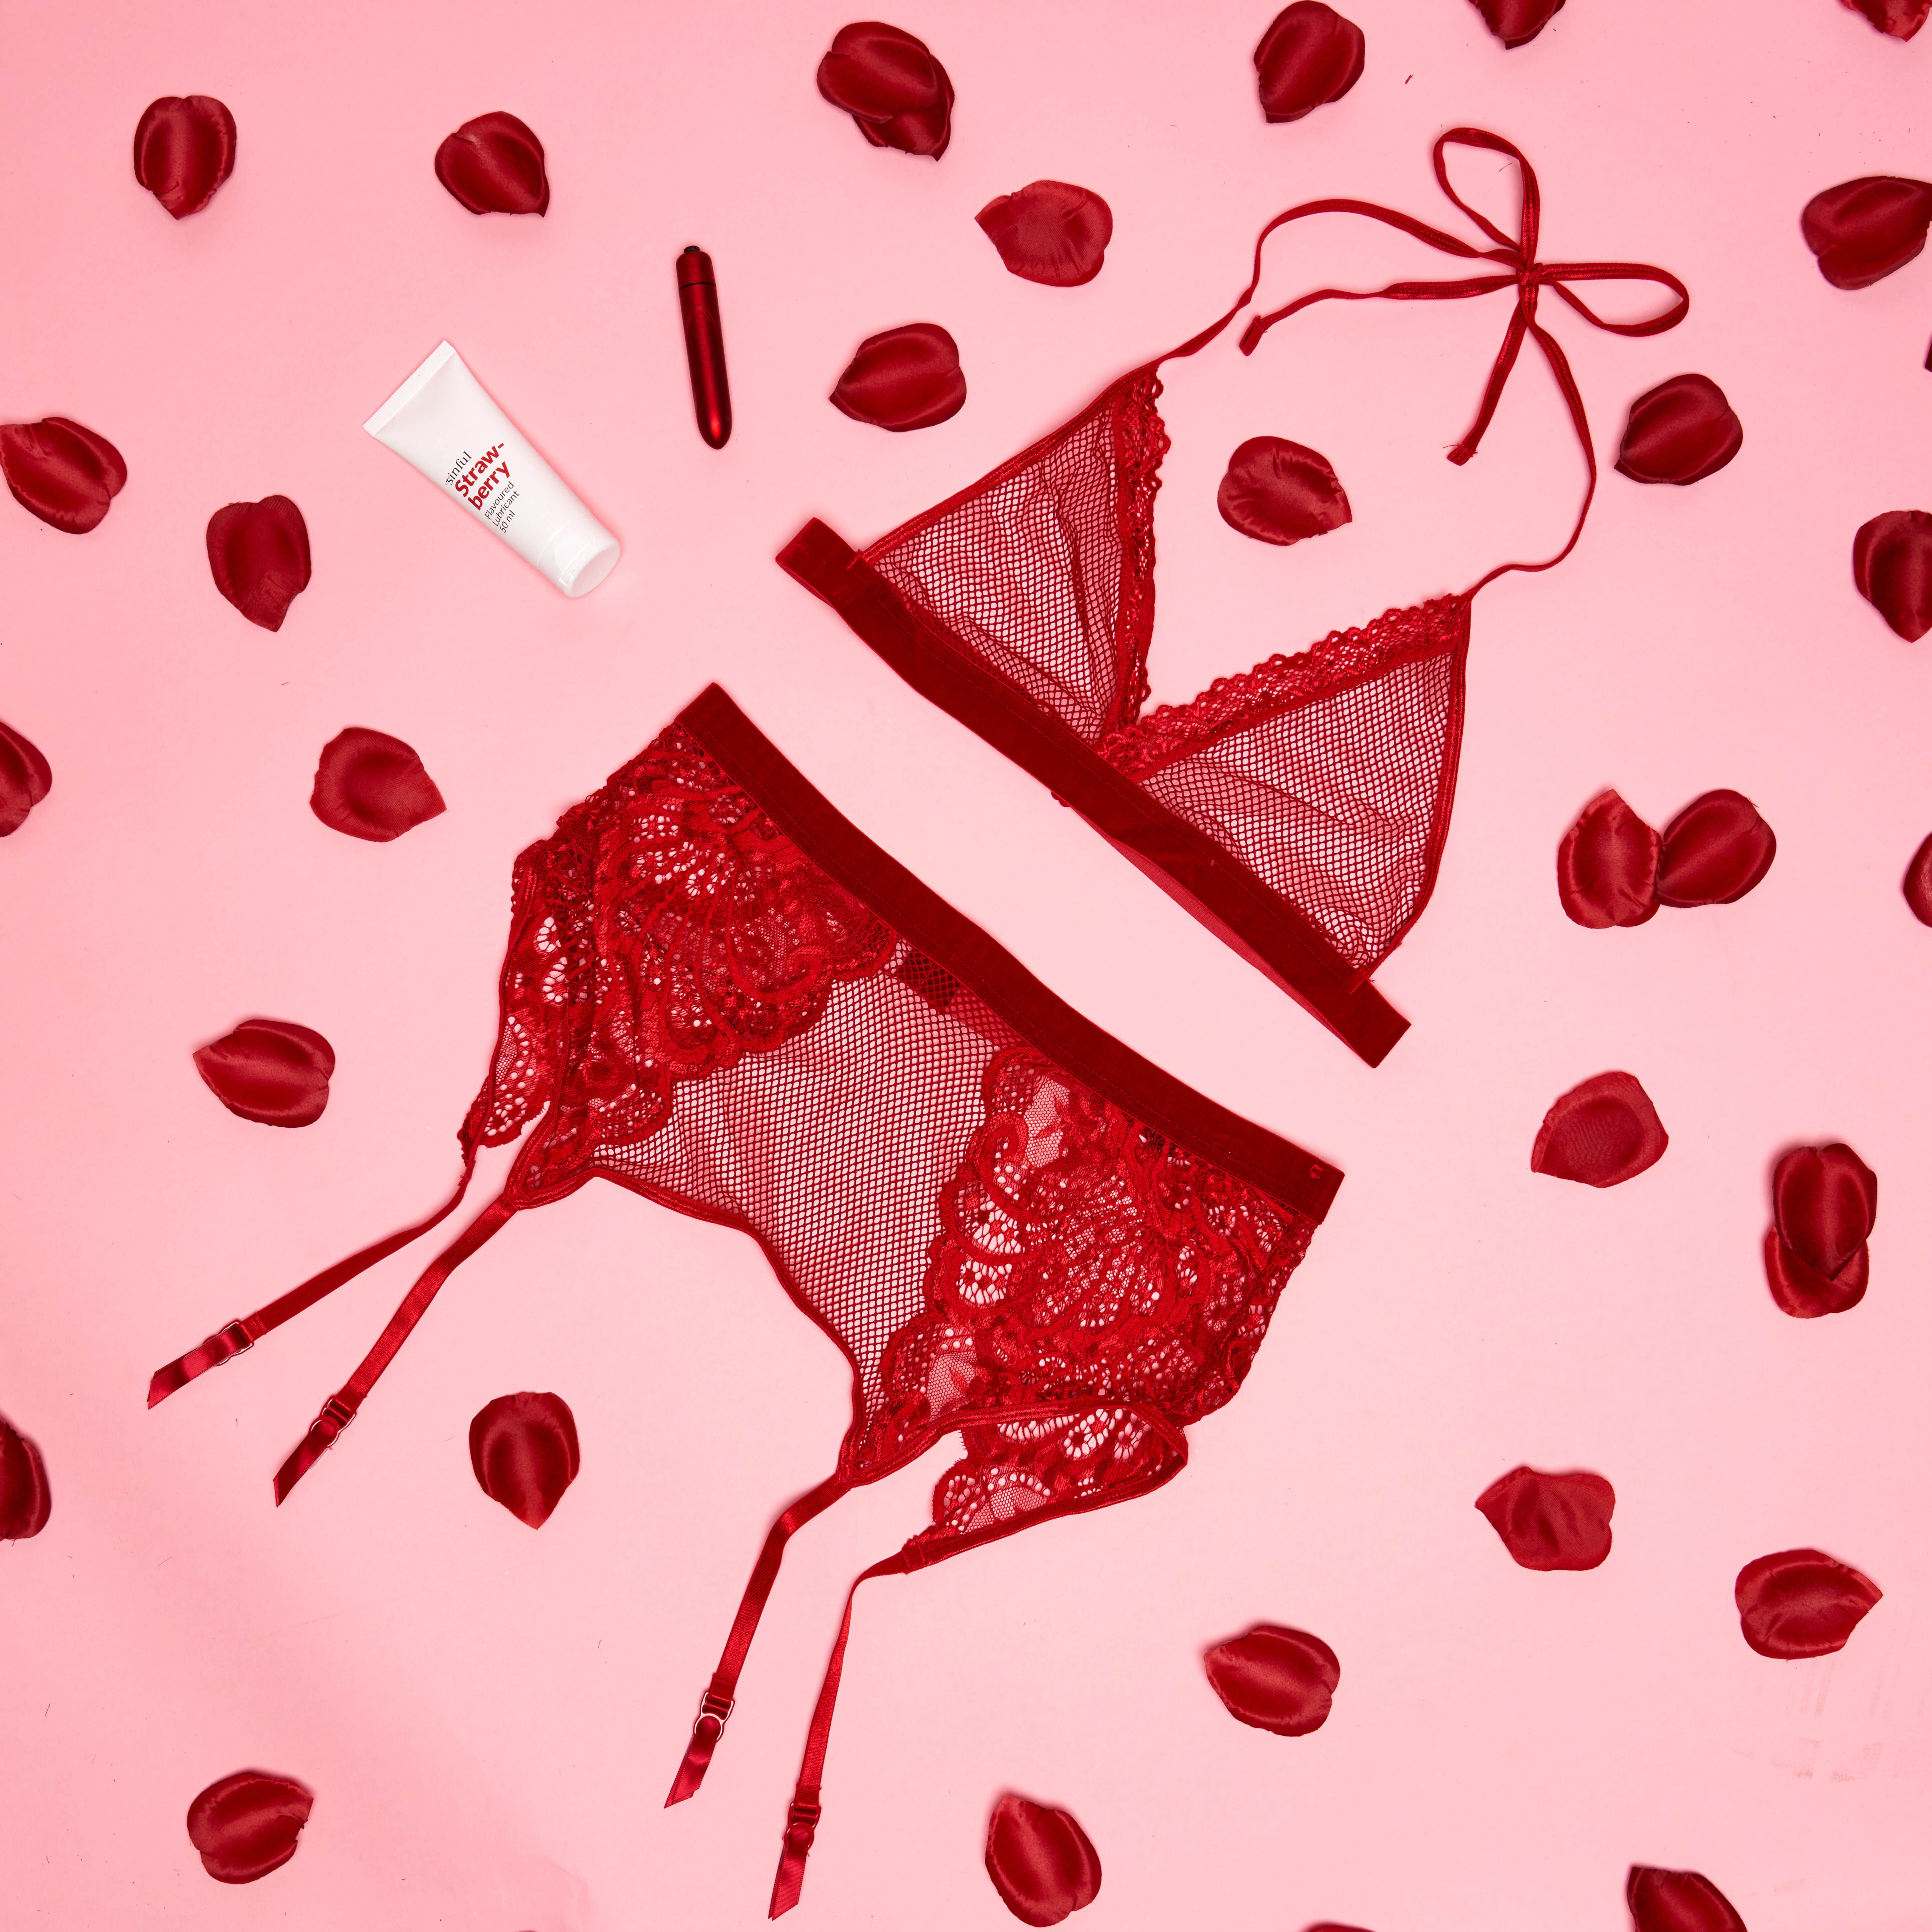 Rode lingerie met een rode vibrator en rozenblaadjes